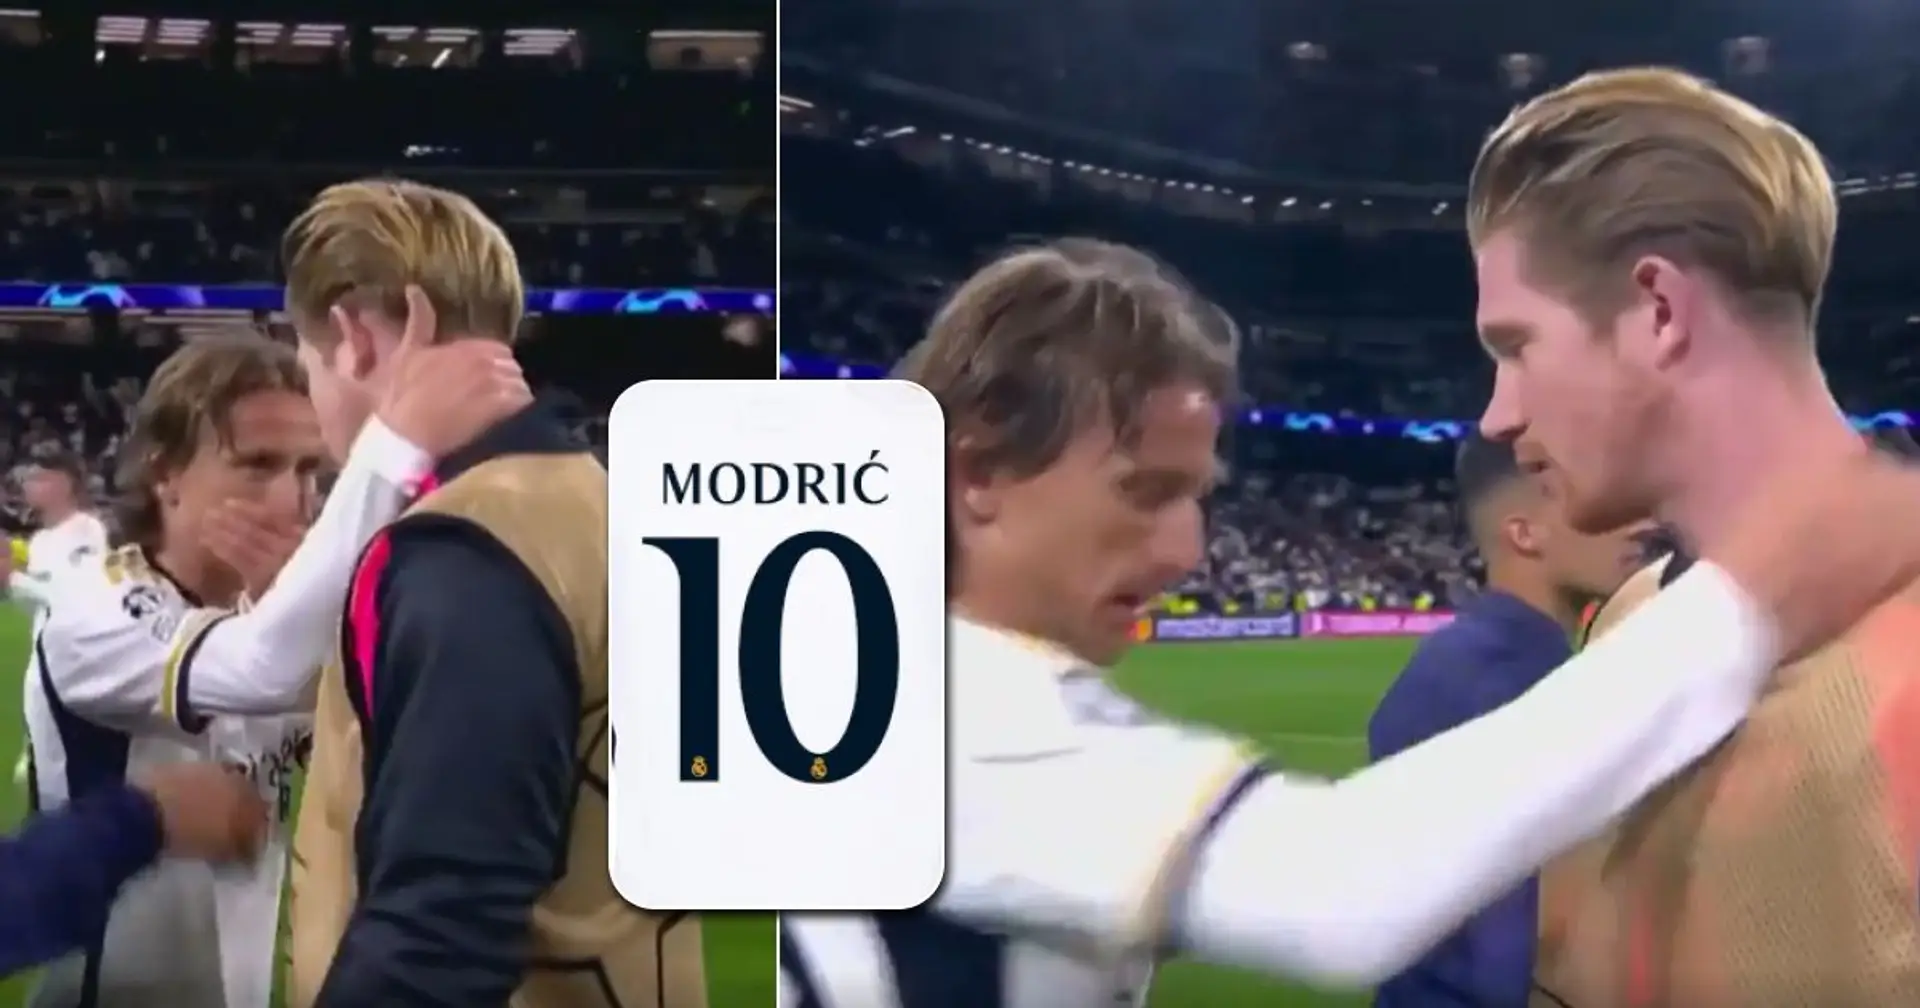 De Bruyne demande le maillot de Modric à la fin du match, la réaction de Luka repérée